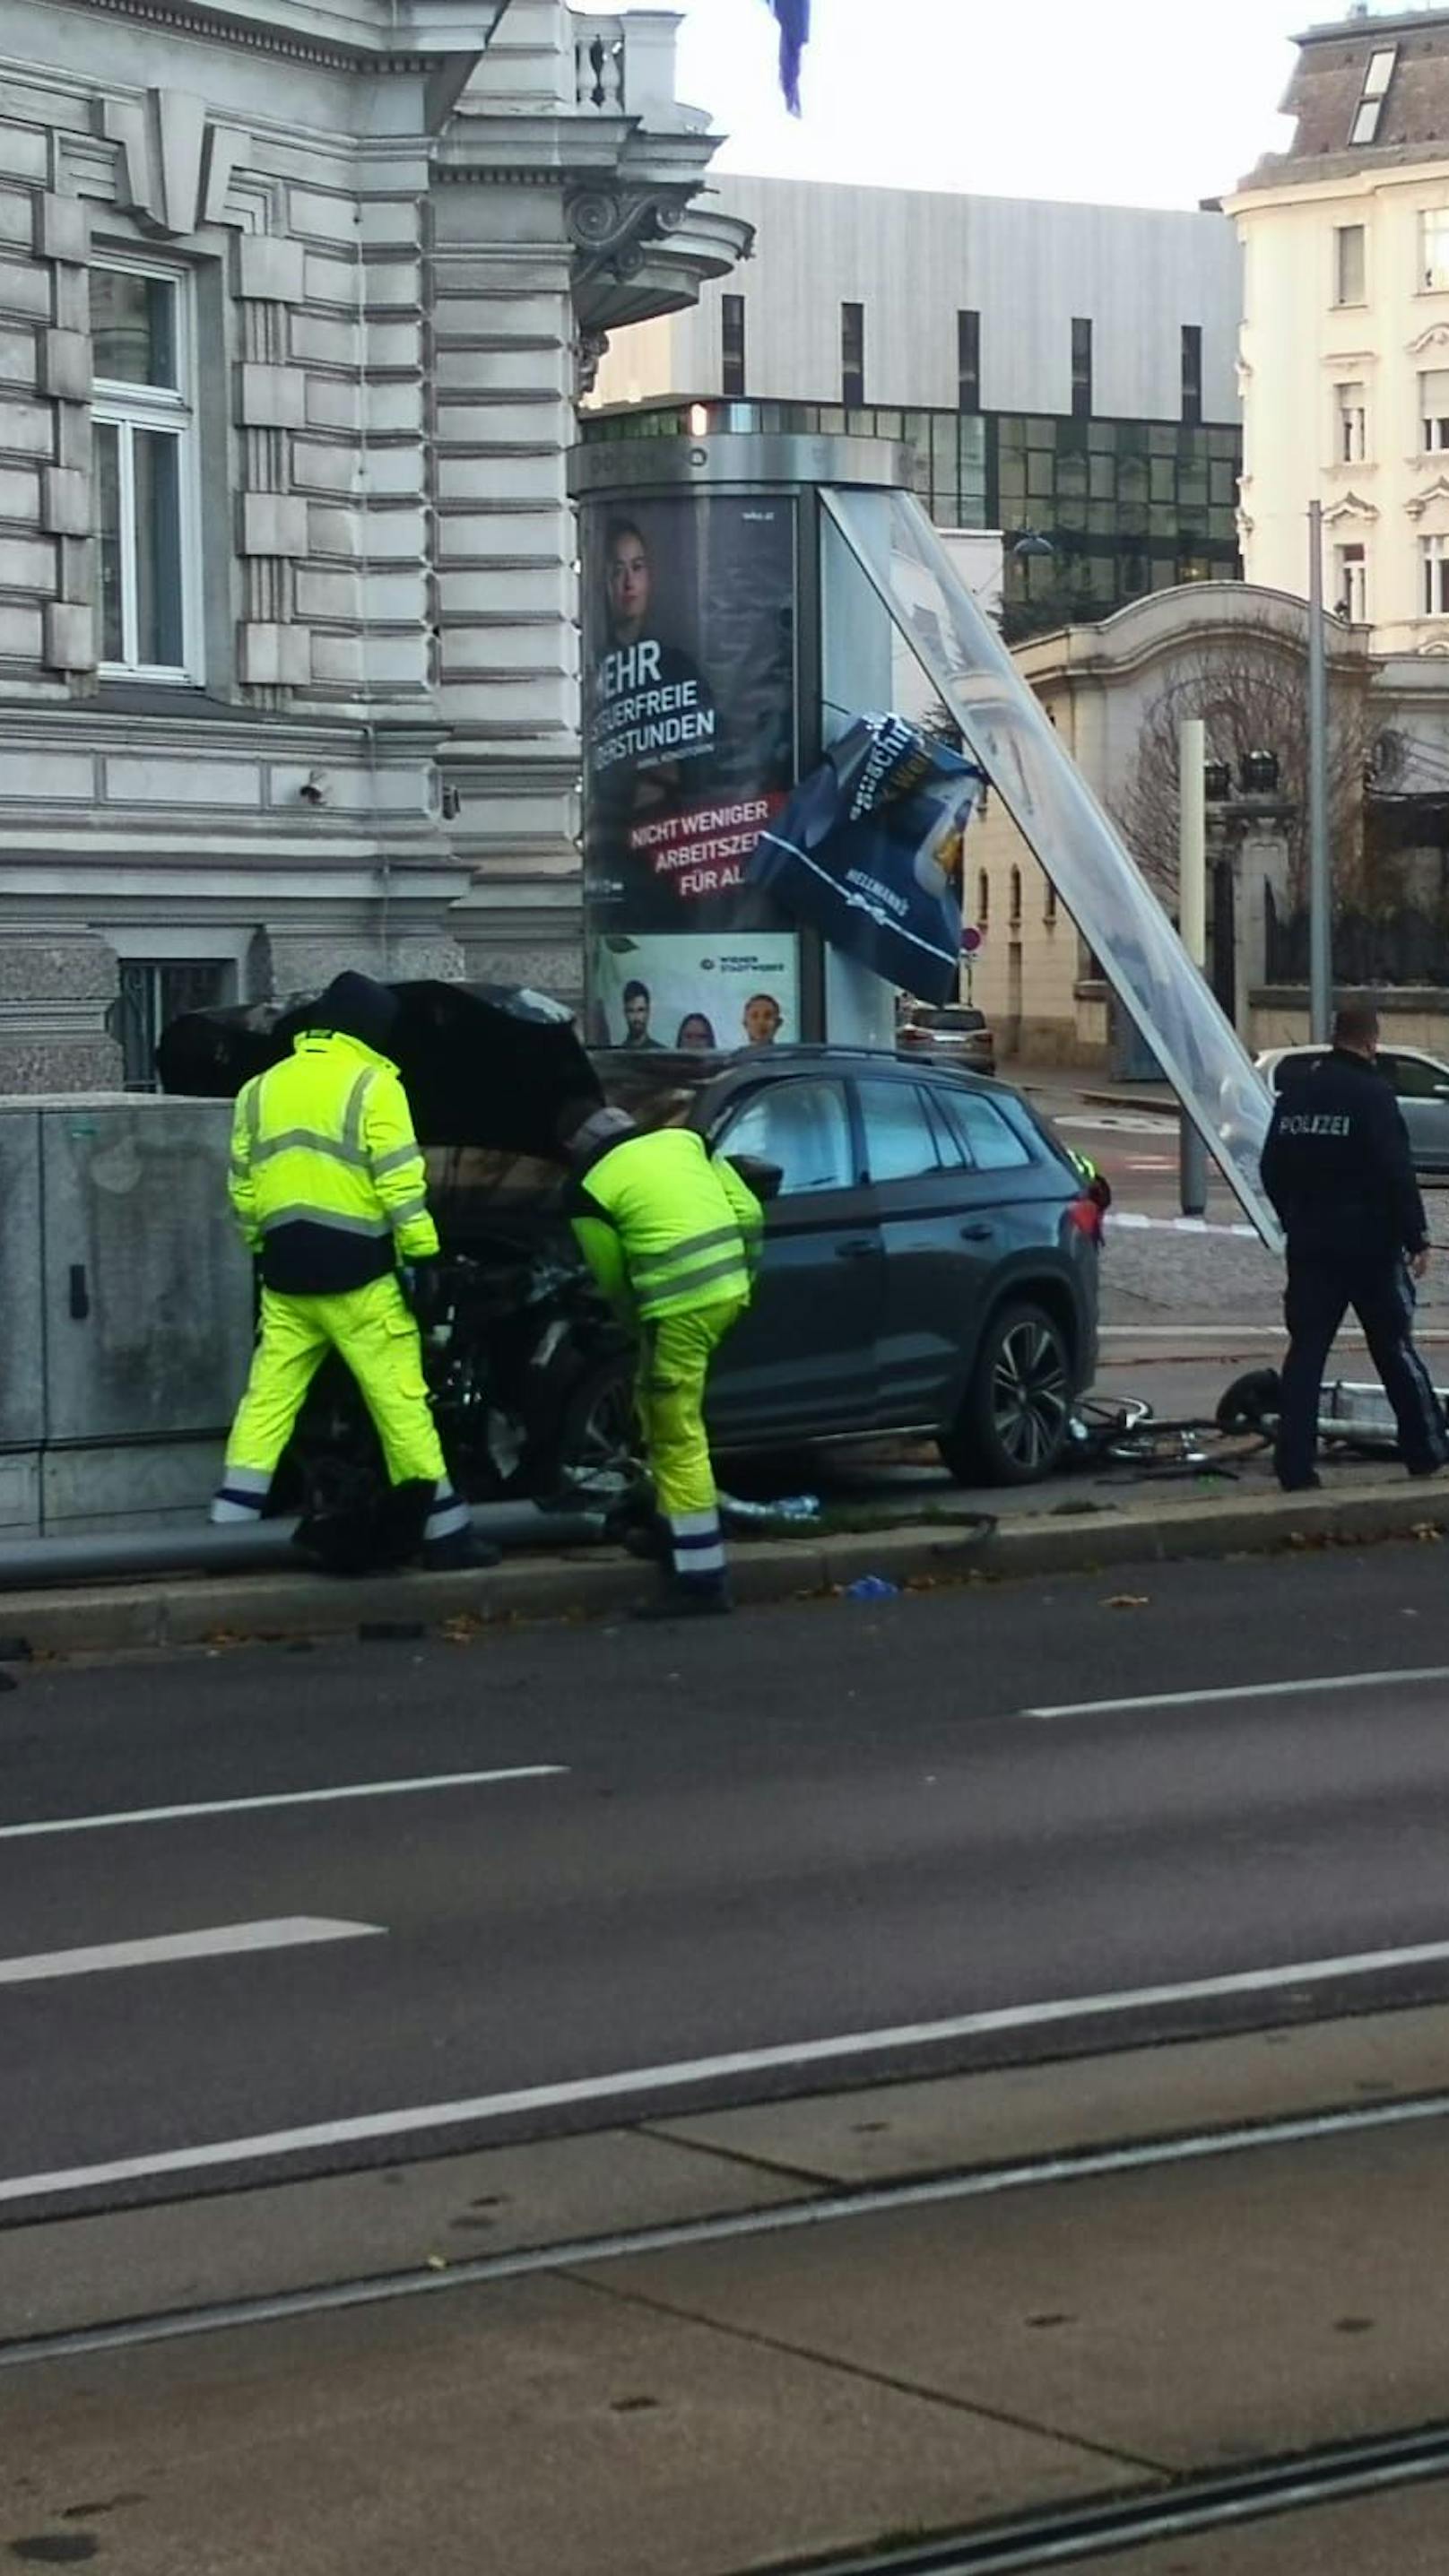 SUV mäht Radständer und Werbetonne in Wiener City um